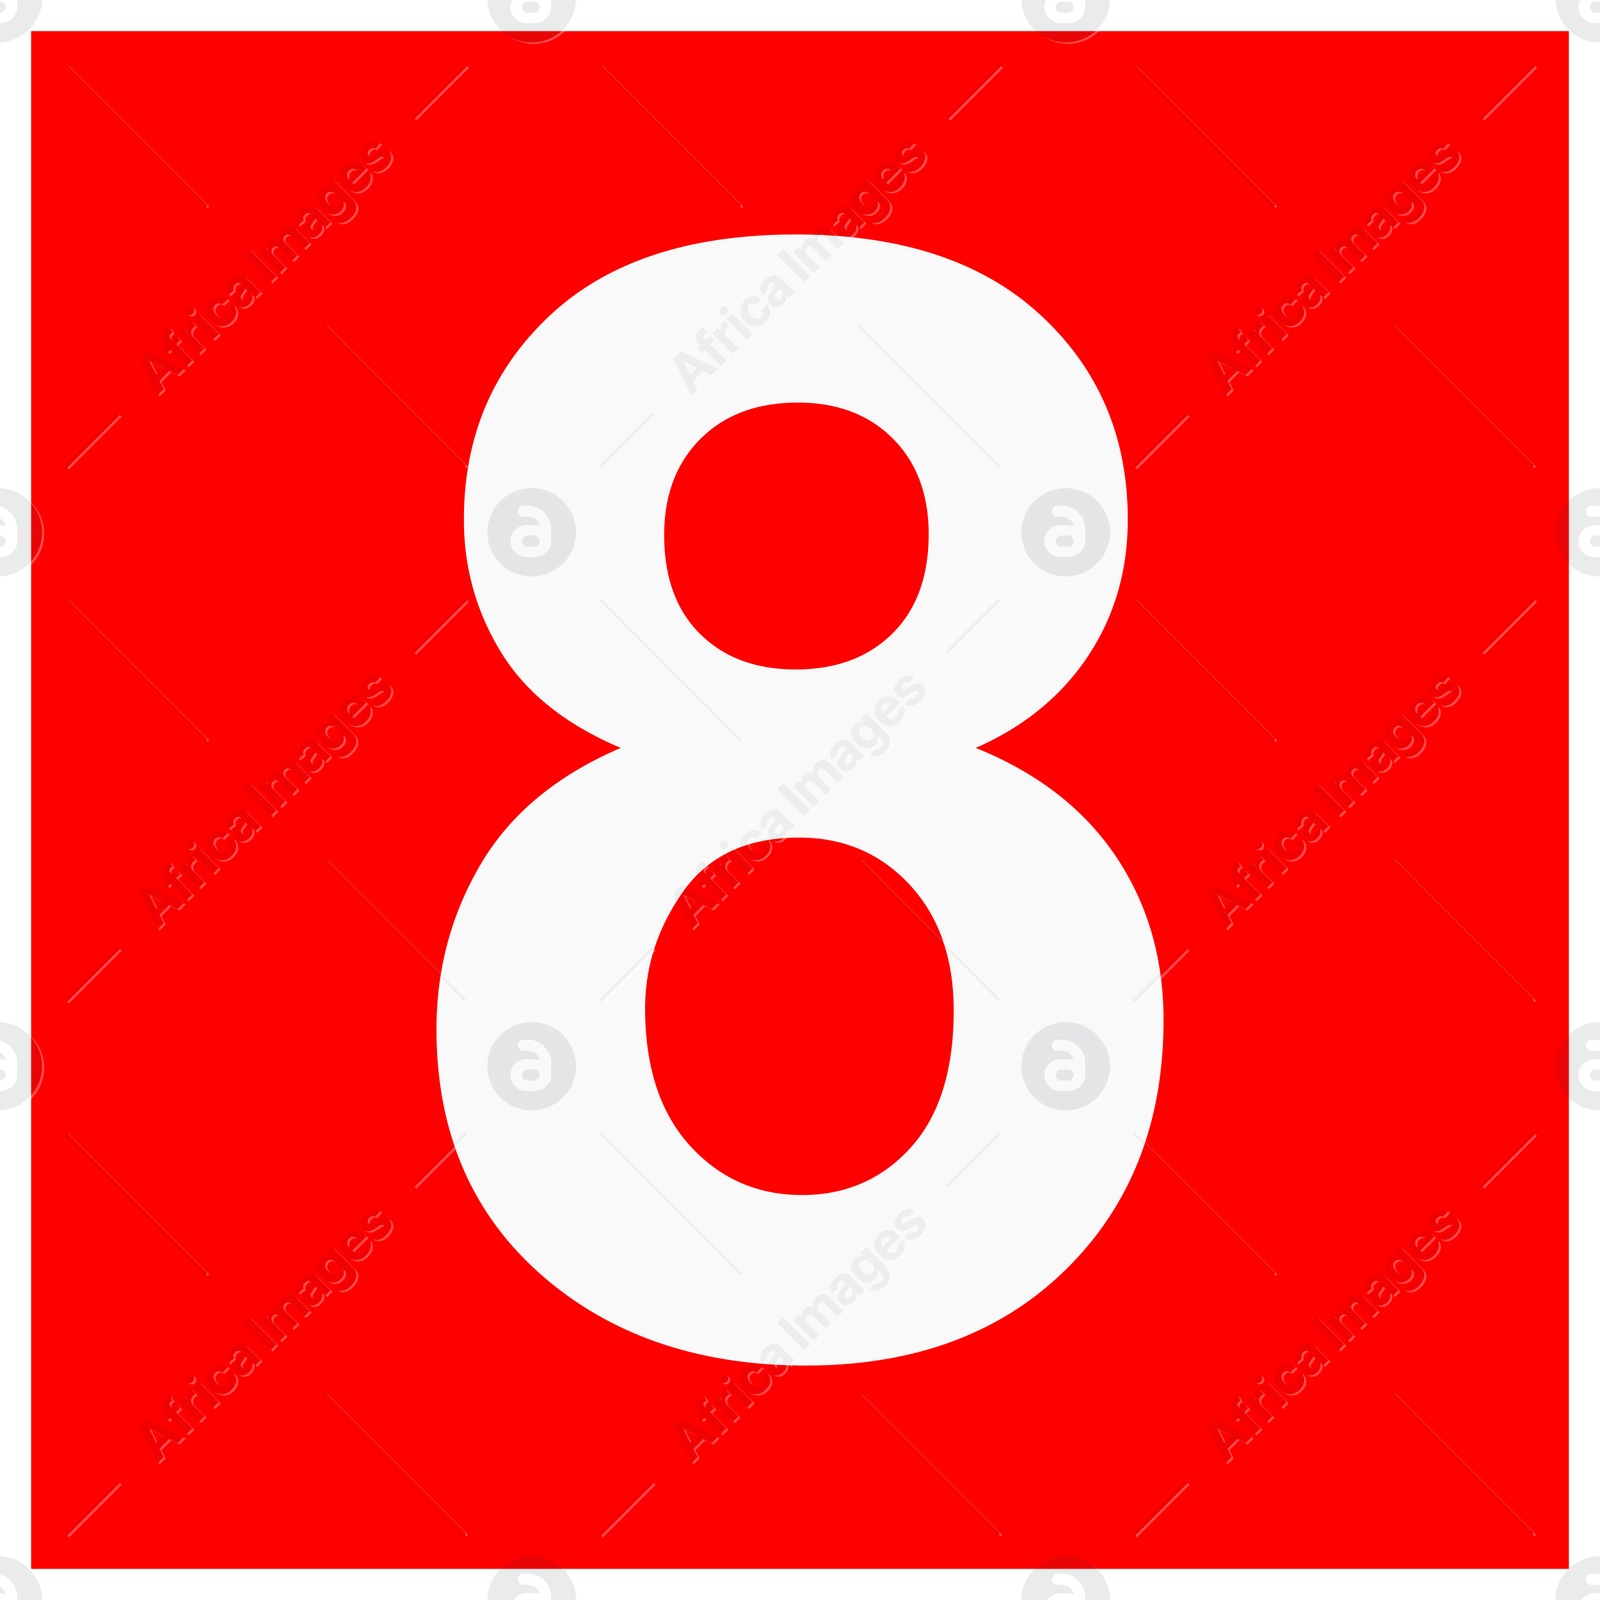 Image of International Maritime Organization (IMO) sign, illustration. Number "8" 